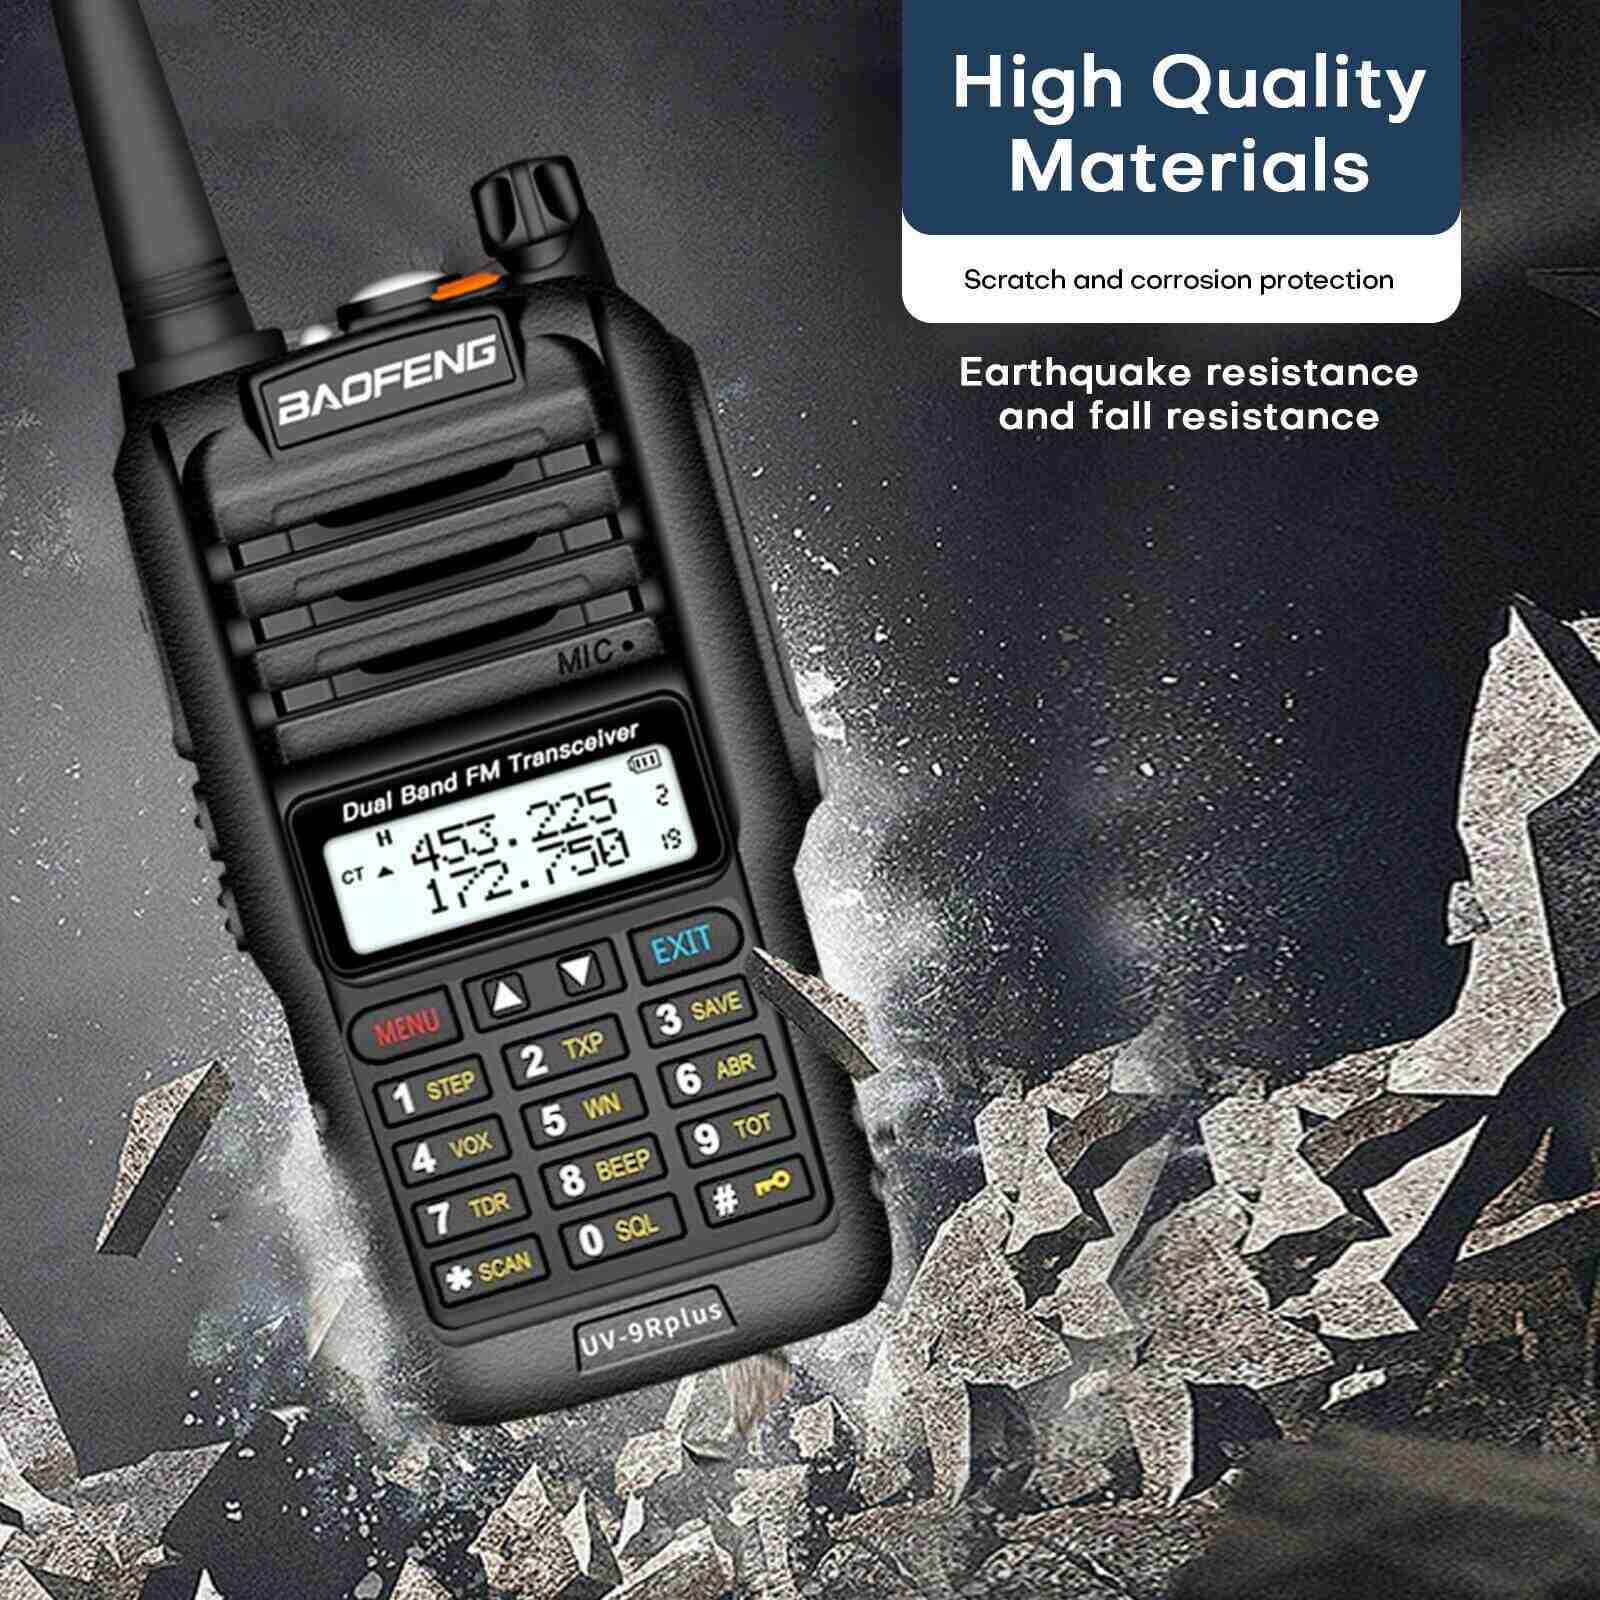 UV-9R Plus VHF UHF Walkie Talkie Dual-Band Handheld